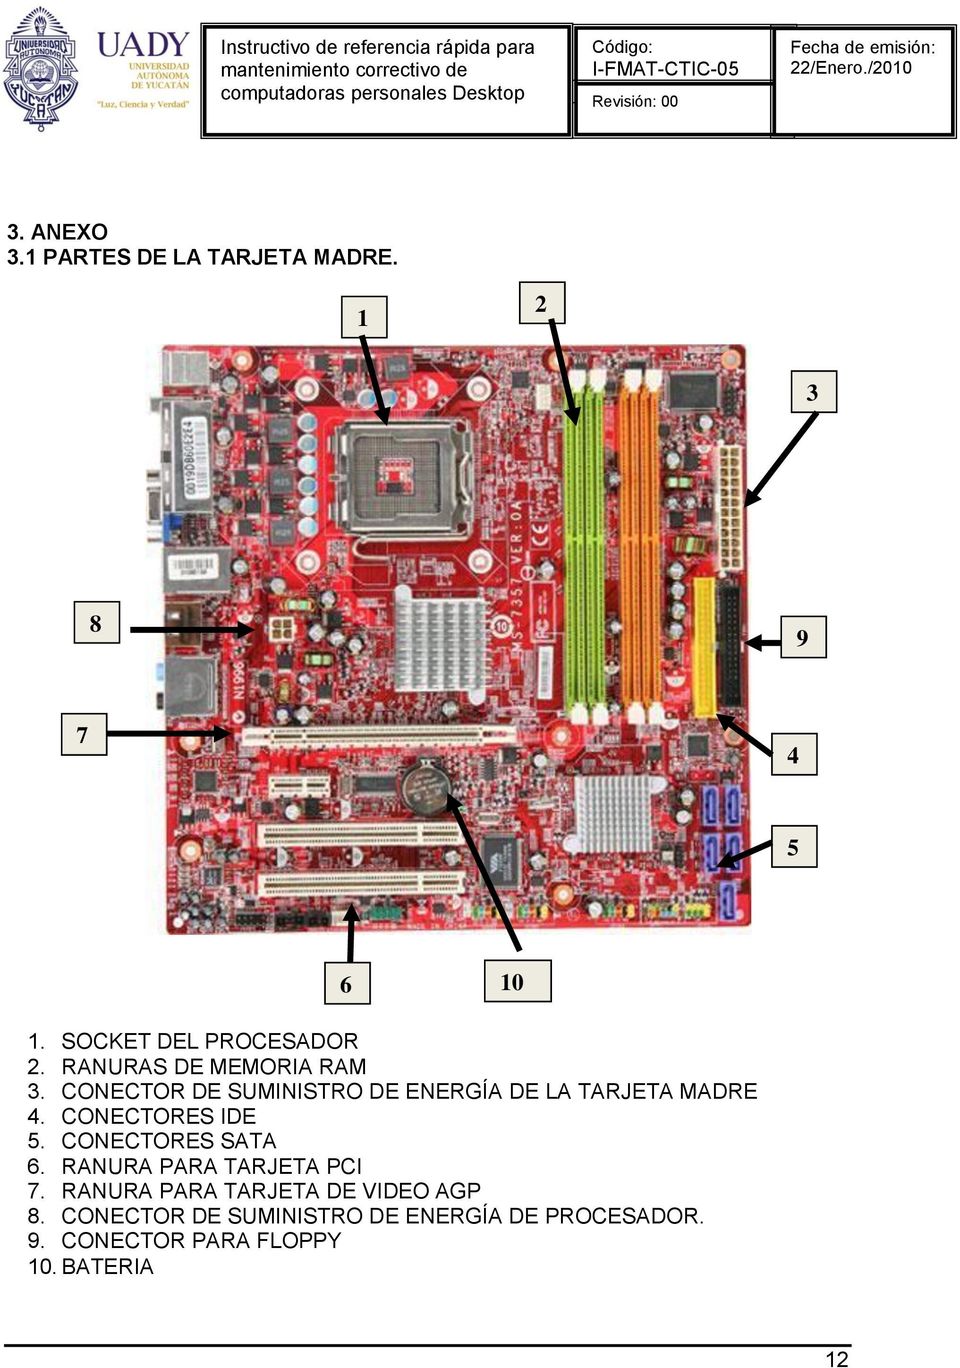 CONECTORES IDE 5. CONECTORES SATA 6. RANURA PARA TARJETA PCI 7.